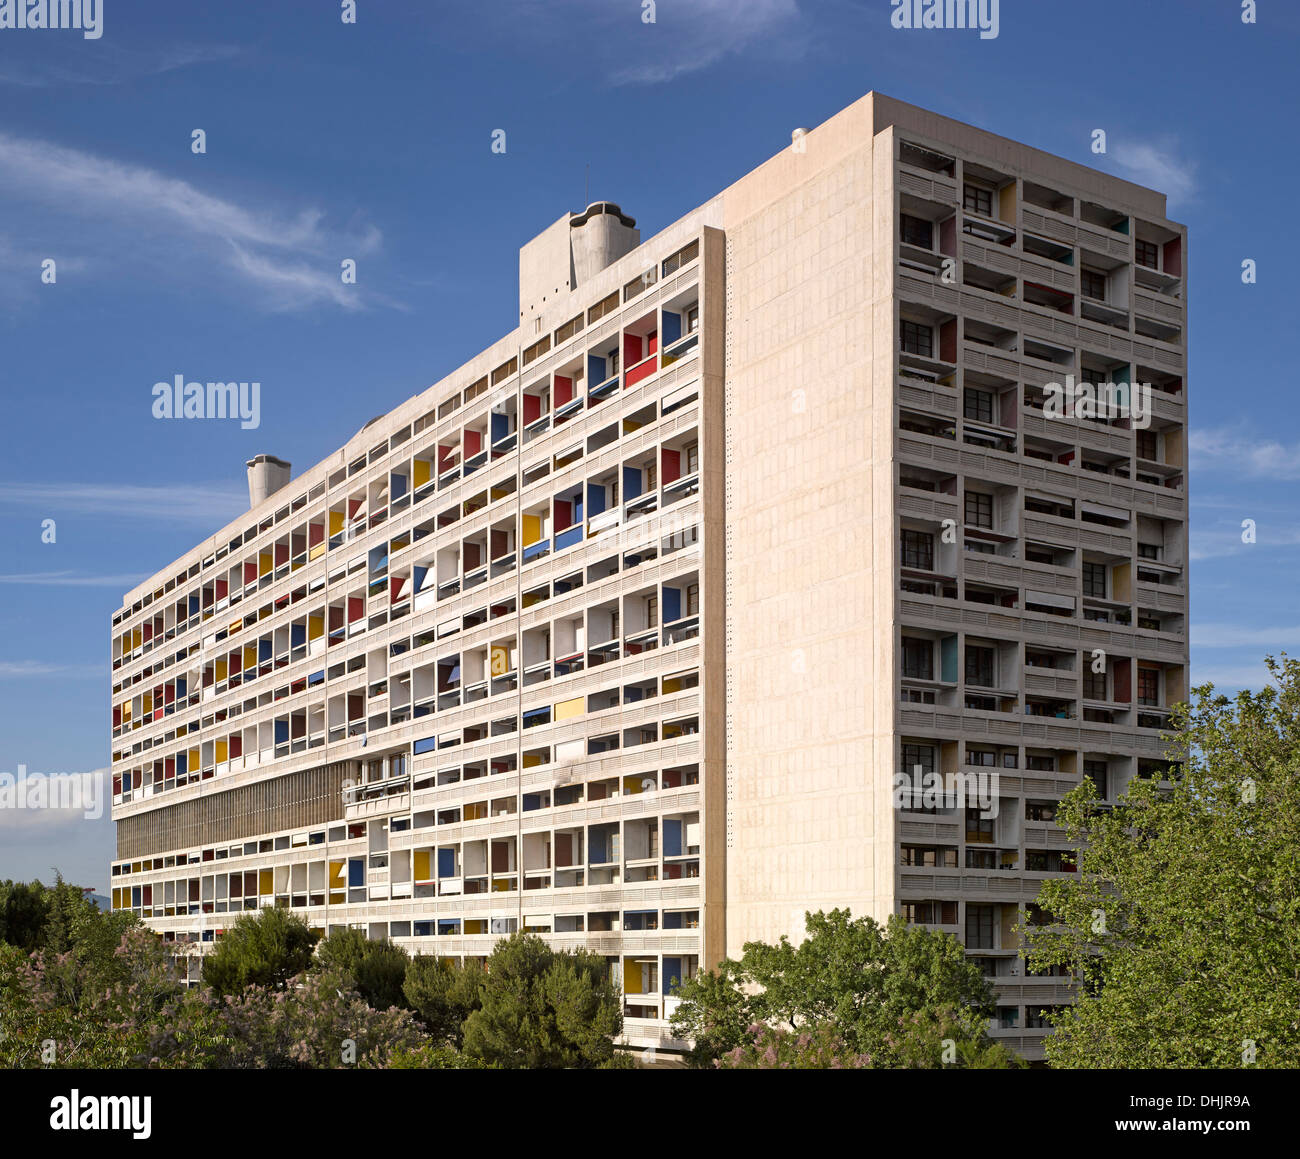 Unite d'habitation, Marseille, France. Architecte : Le Corbusier, 1952. Vue extérieure globale. Banque D'Images